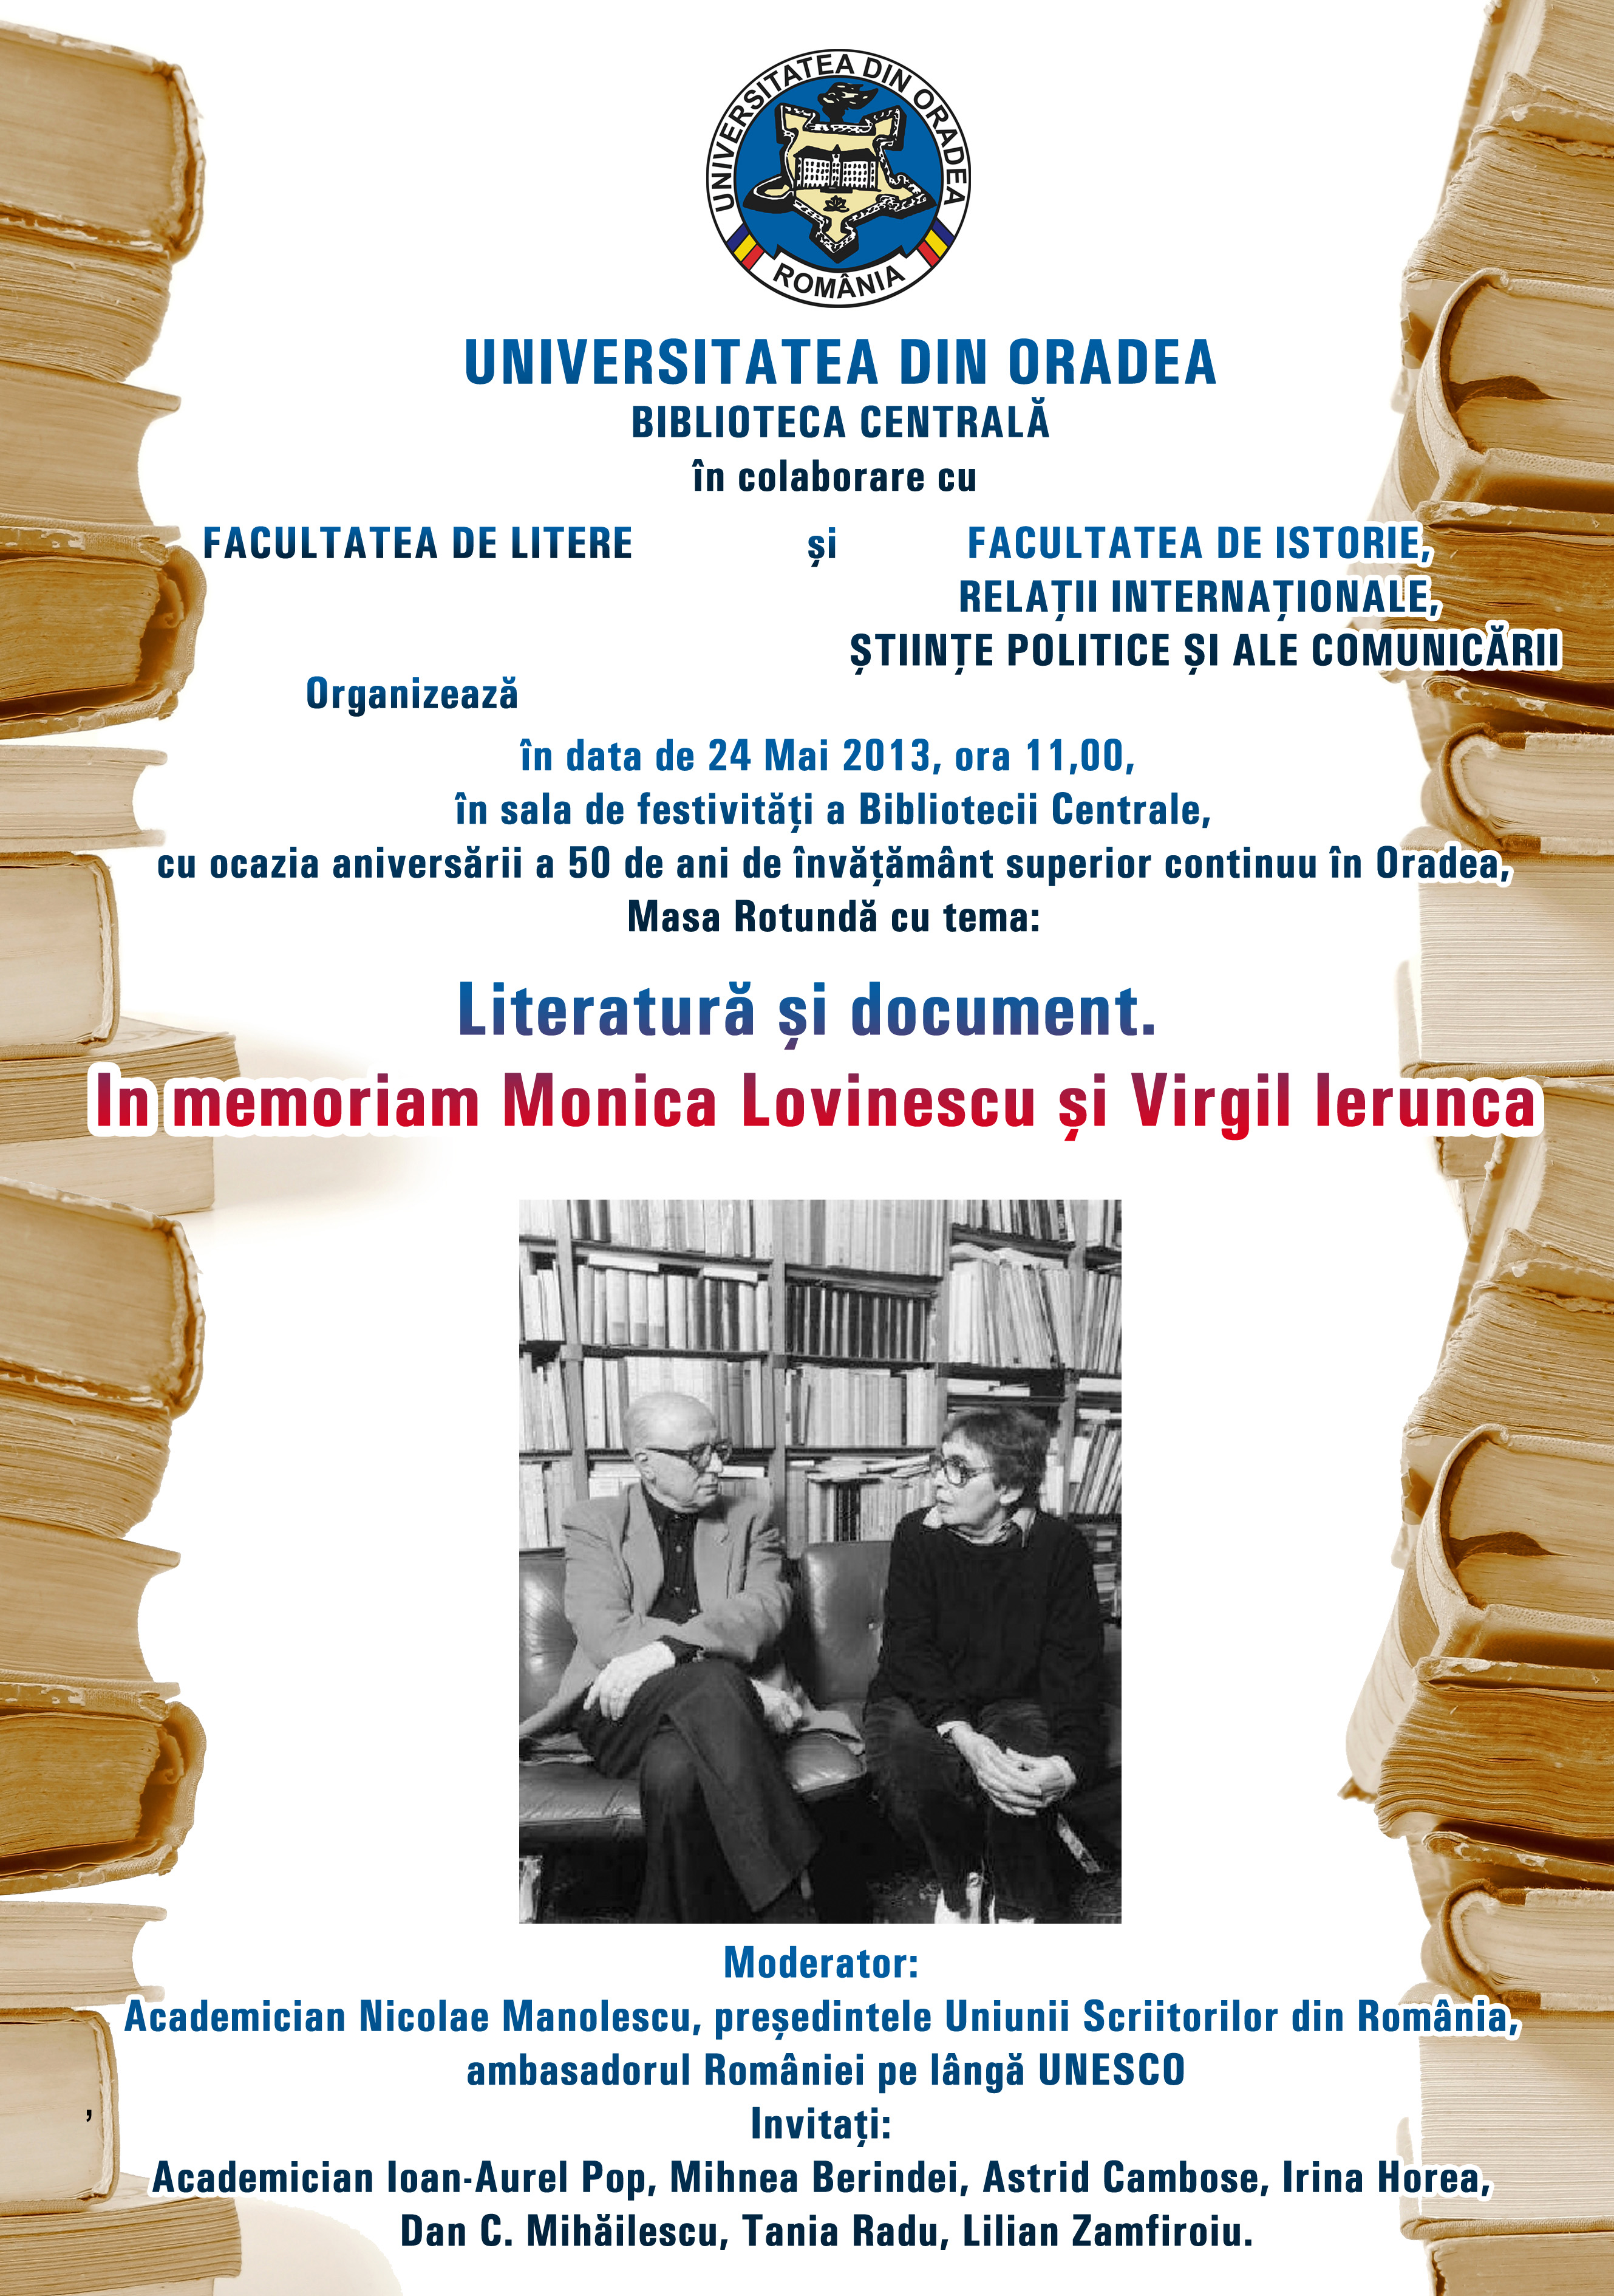 The poster anouncing therountable discussion entitled“Literatură și document” în memoriam Monica Lovinescu și Virgil Ierunca (Literature and document in memoria Monica Lovinescu and Virgil Ierunca), 24 May, 2013 at the University Library of Oradea 